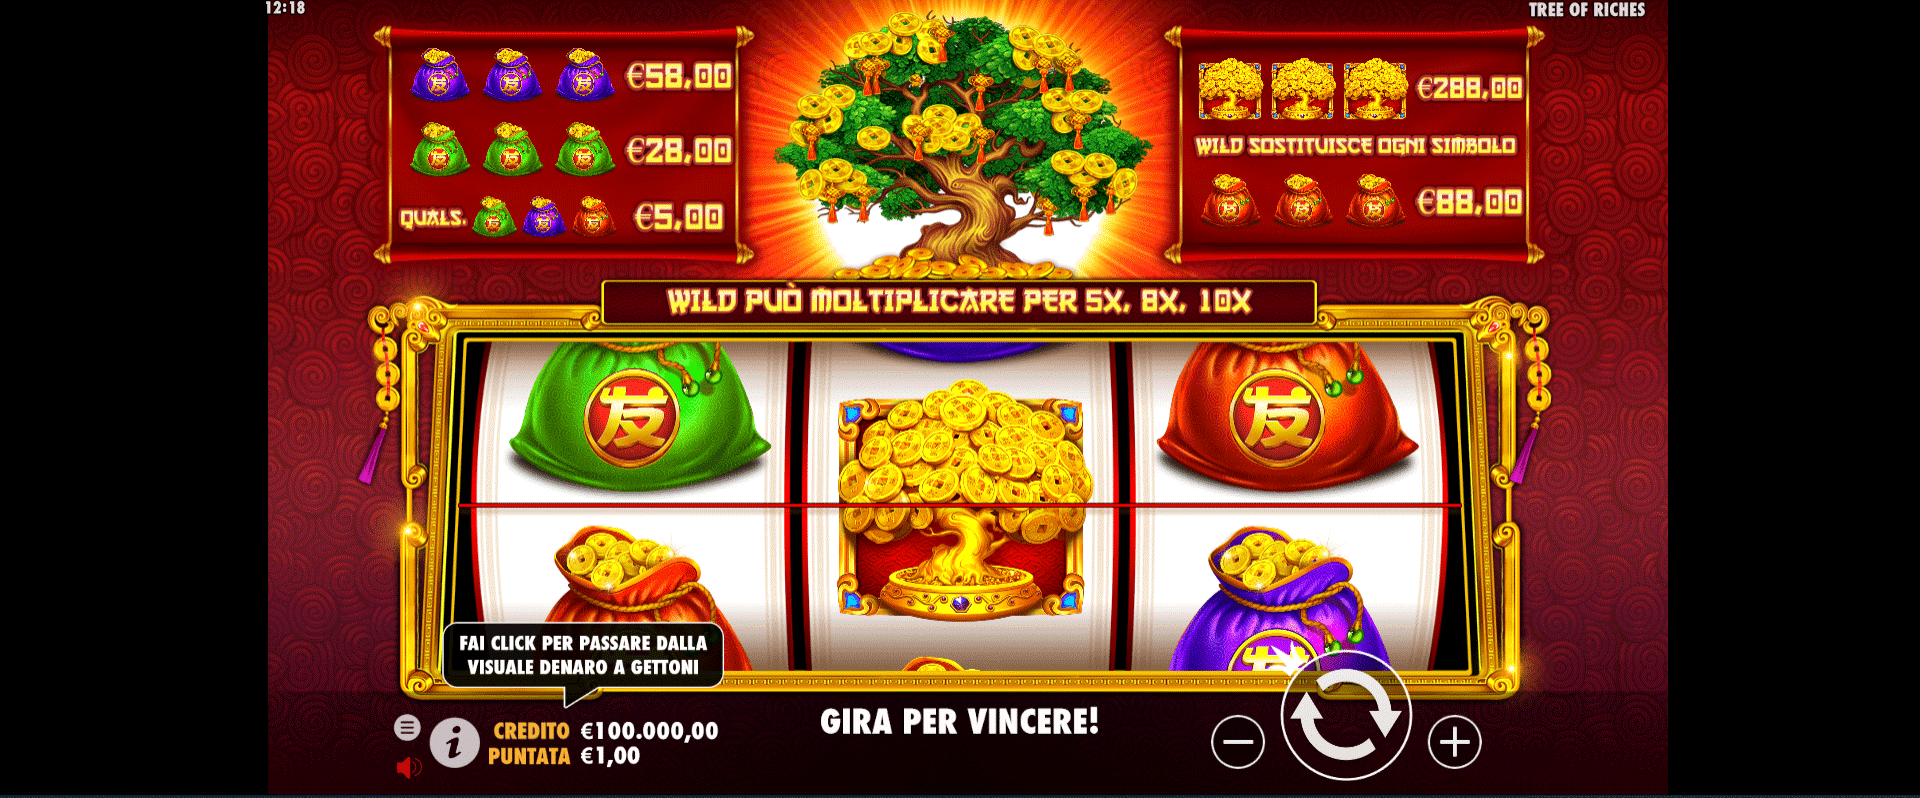 griglia del gioco slot online tree of riches